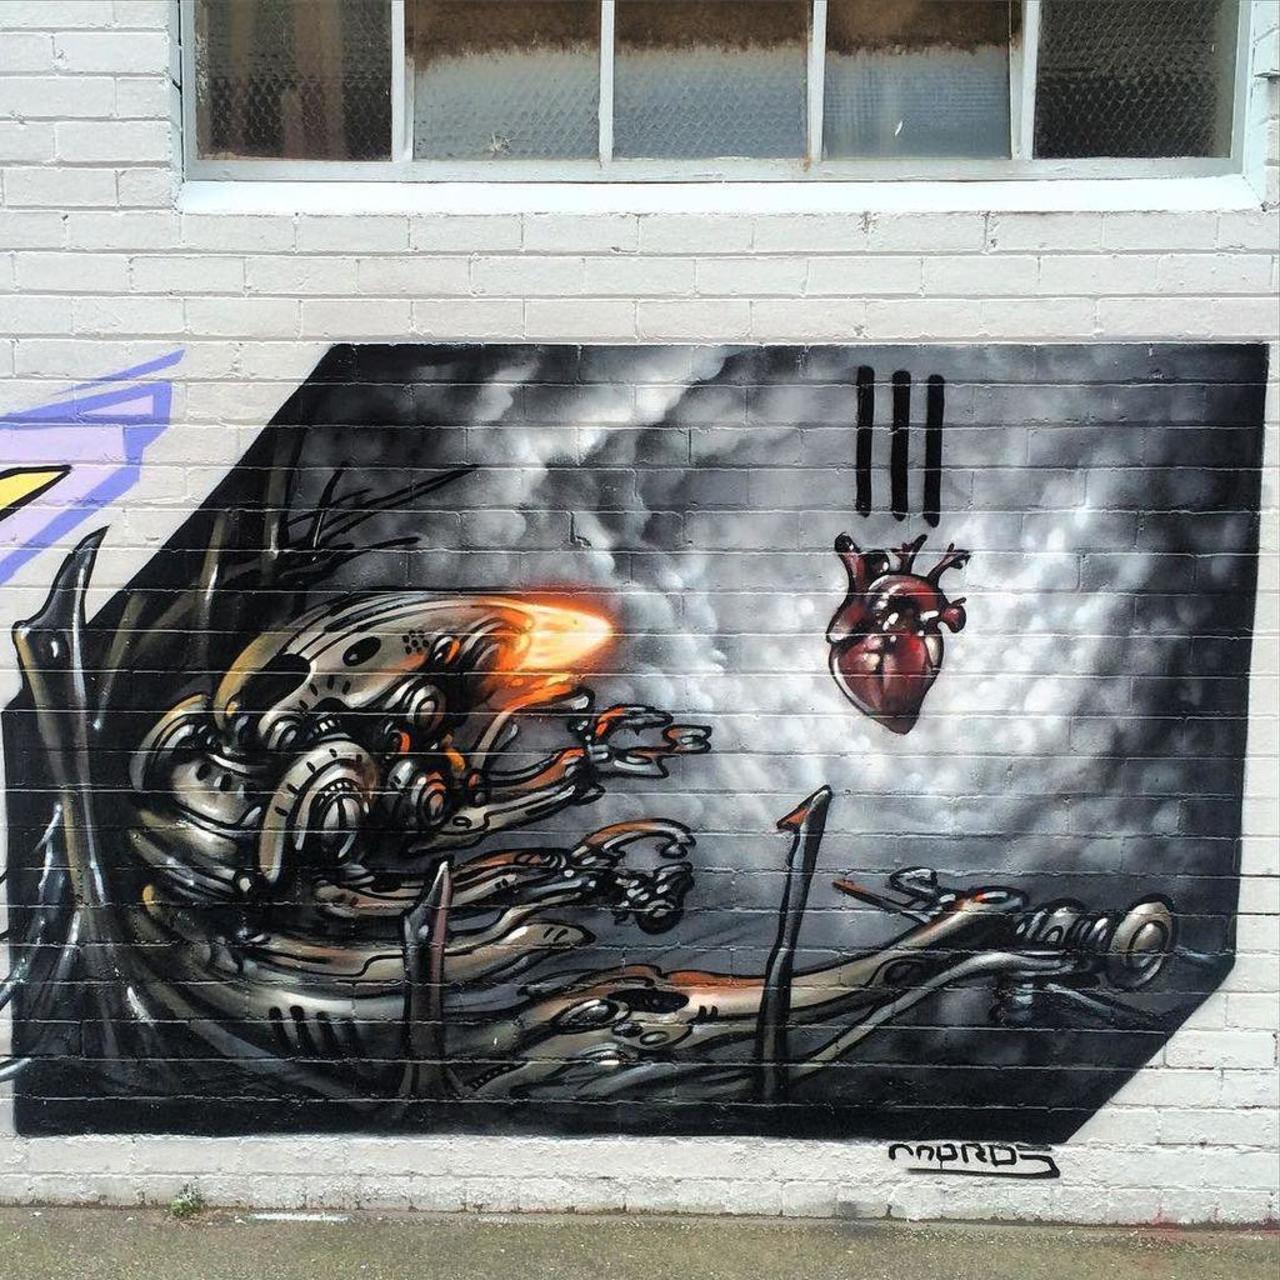 RT @artpushr: via #streetartninja "http://ift.tt/1KW4tvT" #graffiti #streetart http://t.co/LCVjIdh3EE